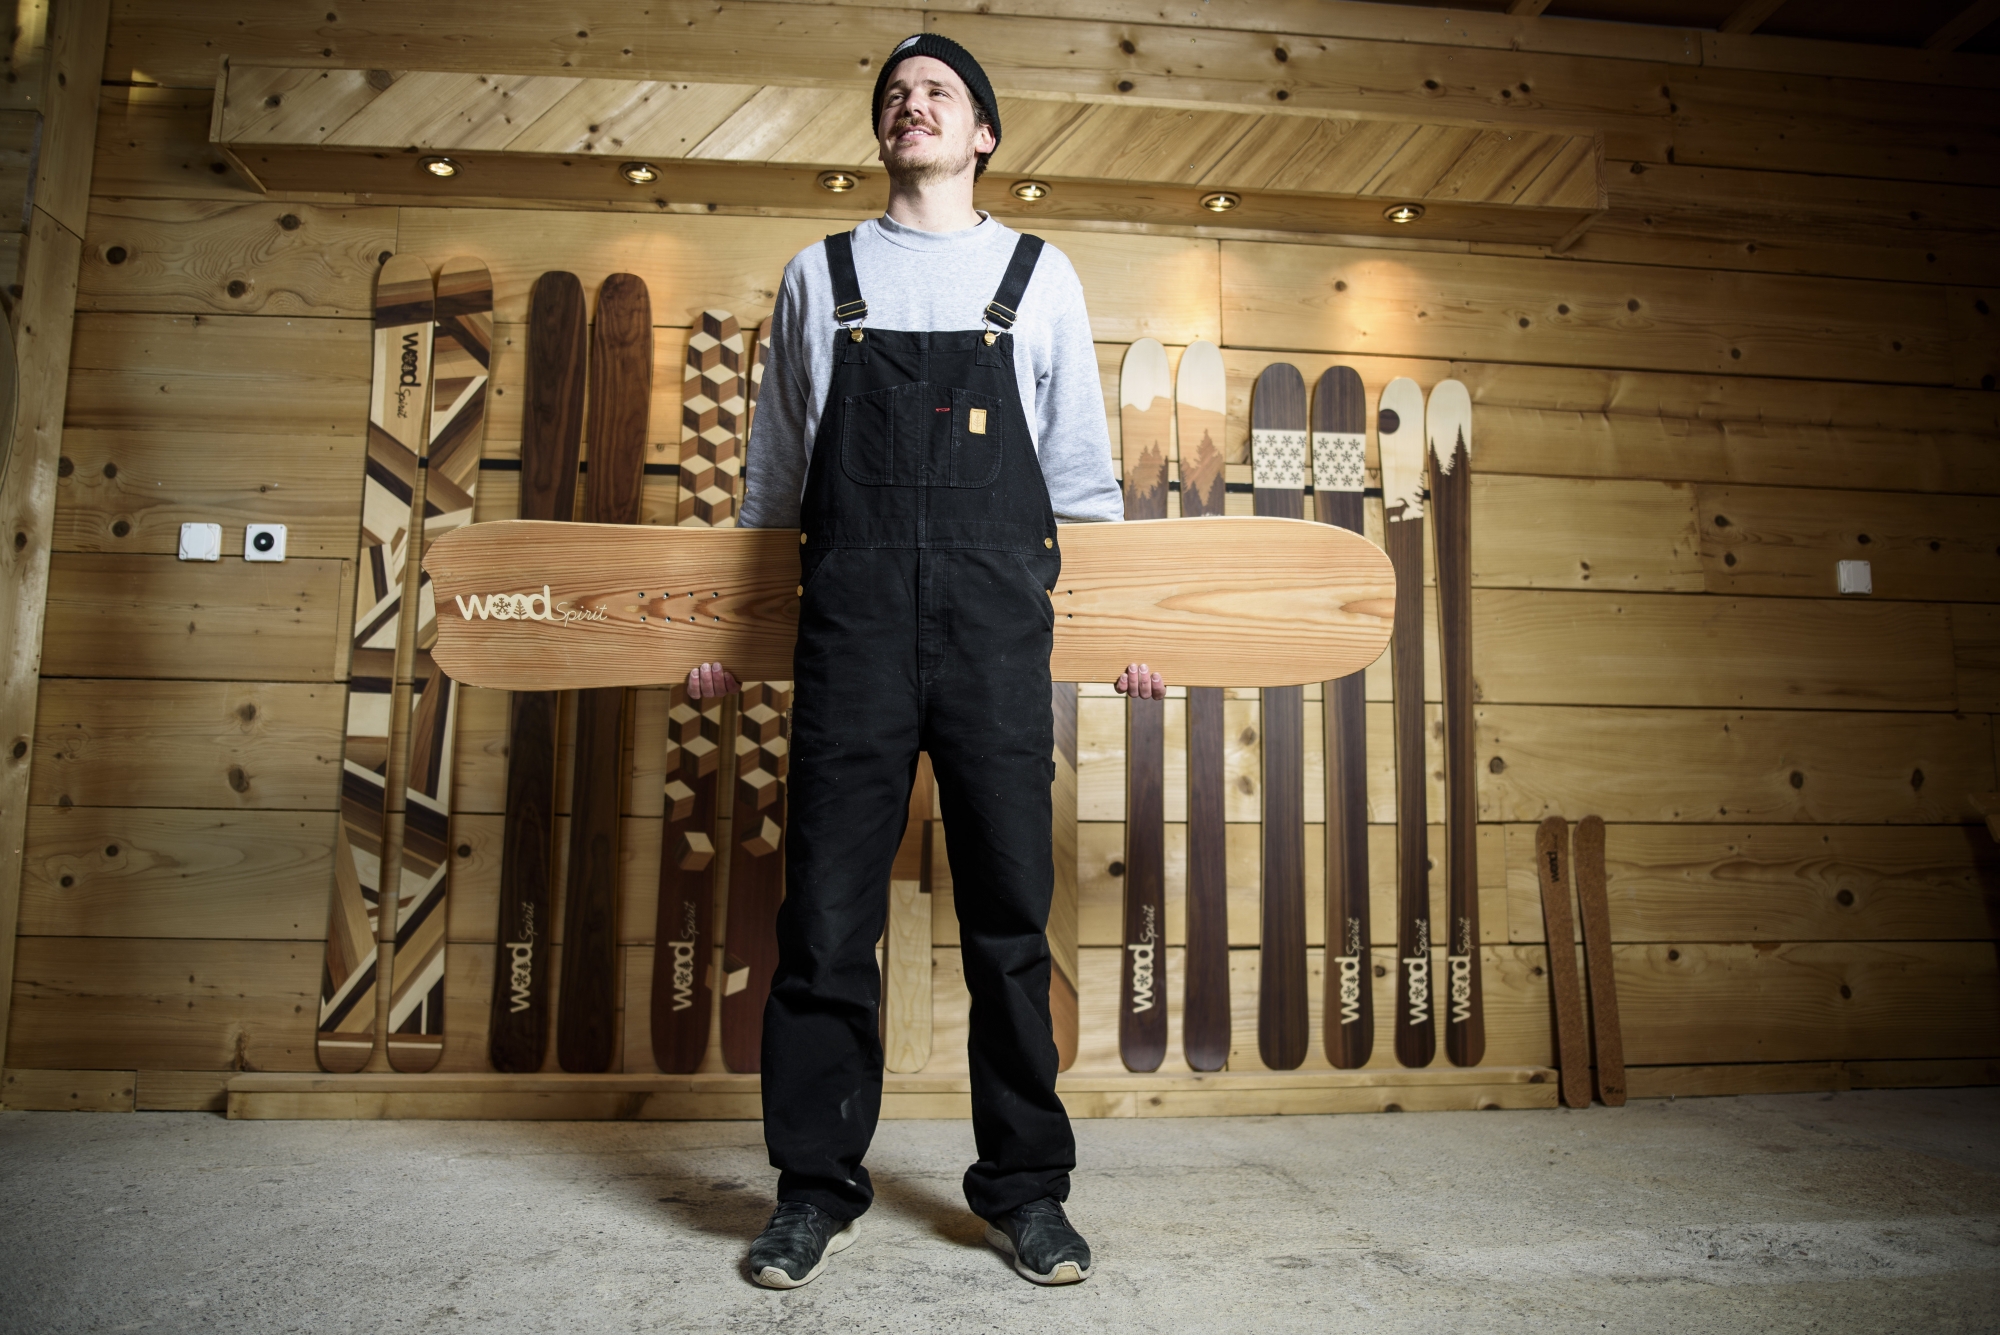 Lucas Bessard crée lui même ses skis, dans son atelier à Cuarnens. Son travail est aujourd'hui récompensé.